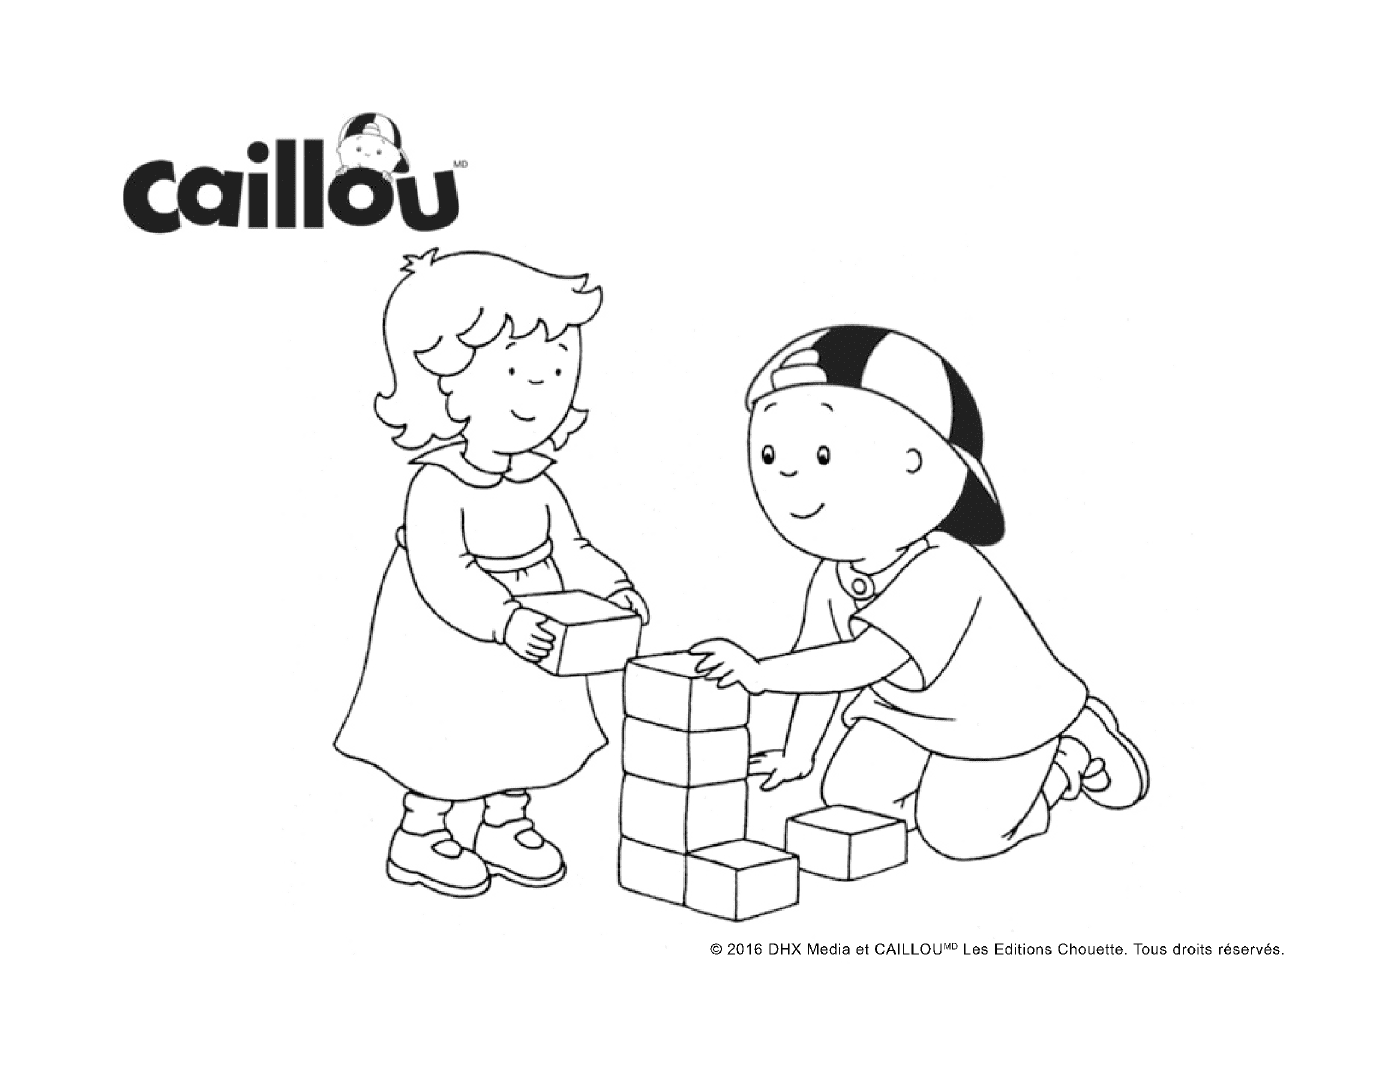  Блок-игр с Кейлу и его младшей сестрой 